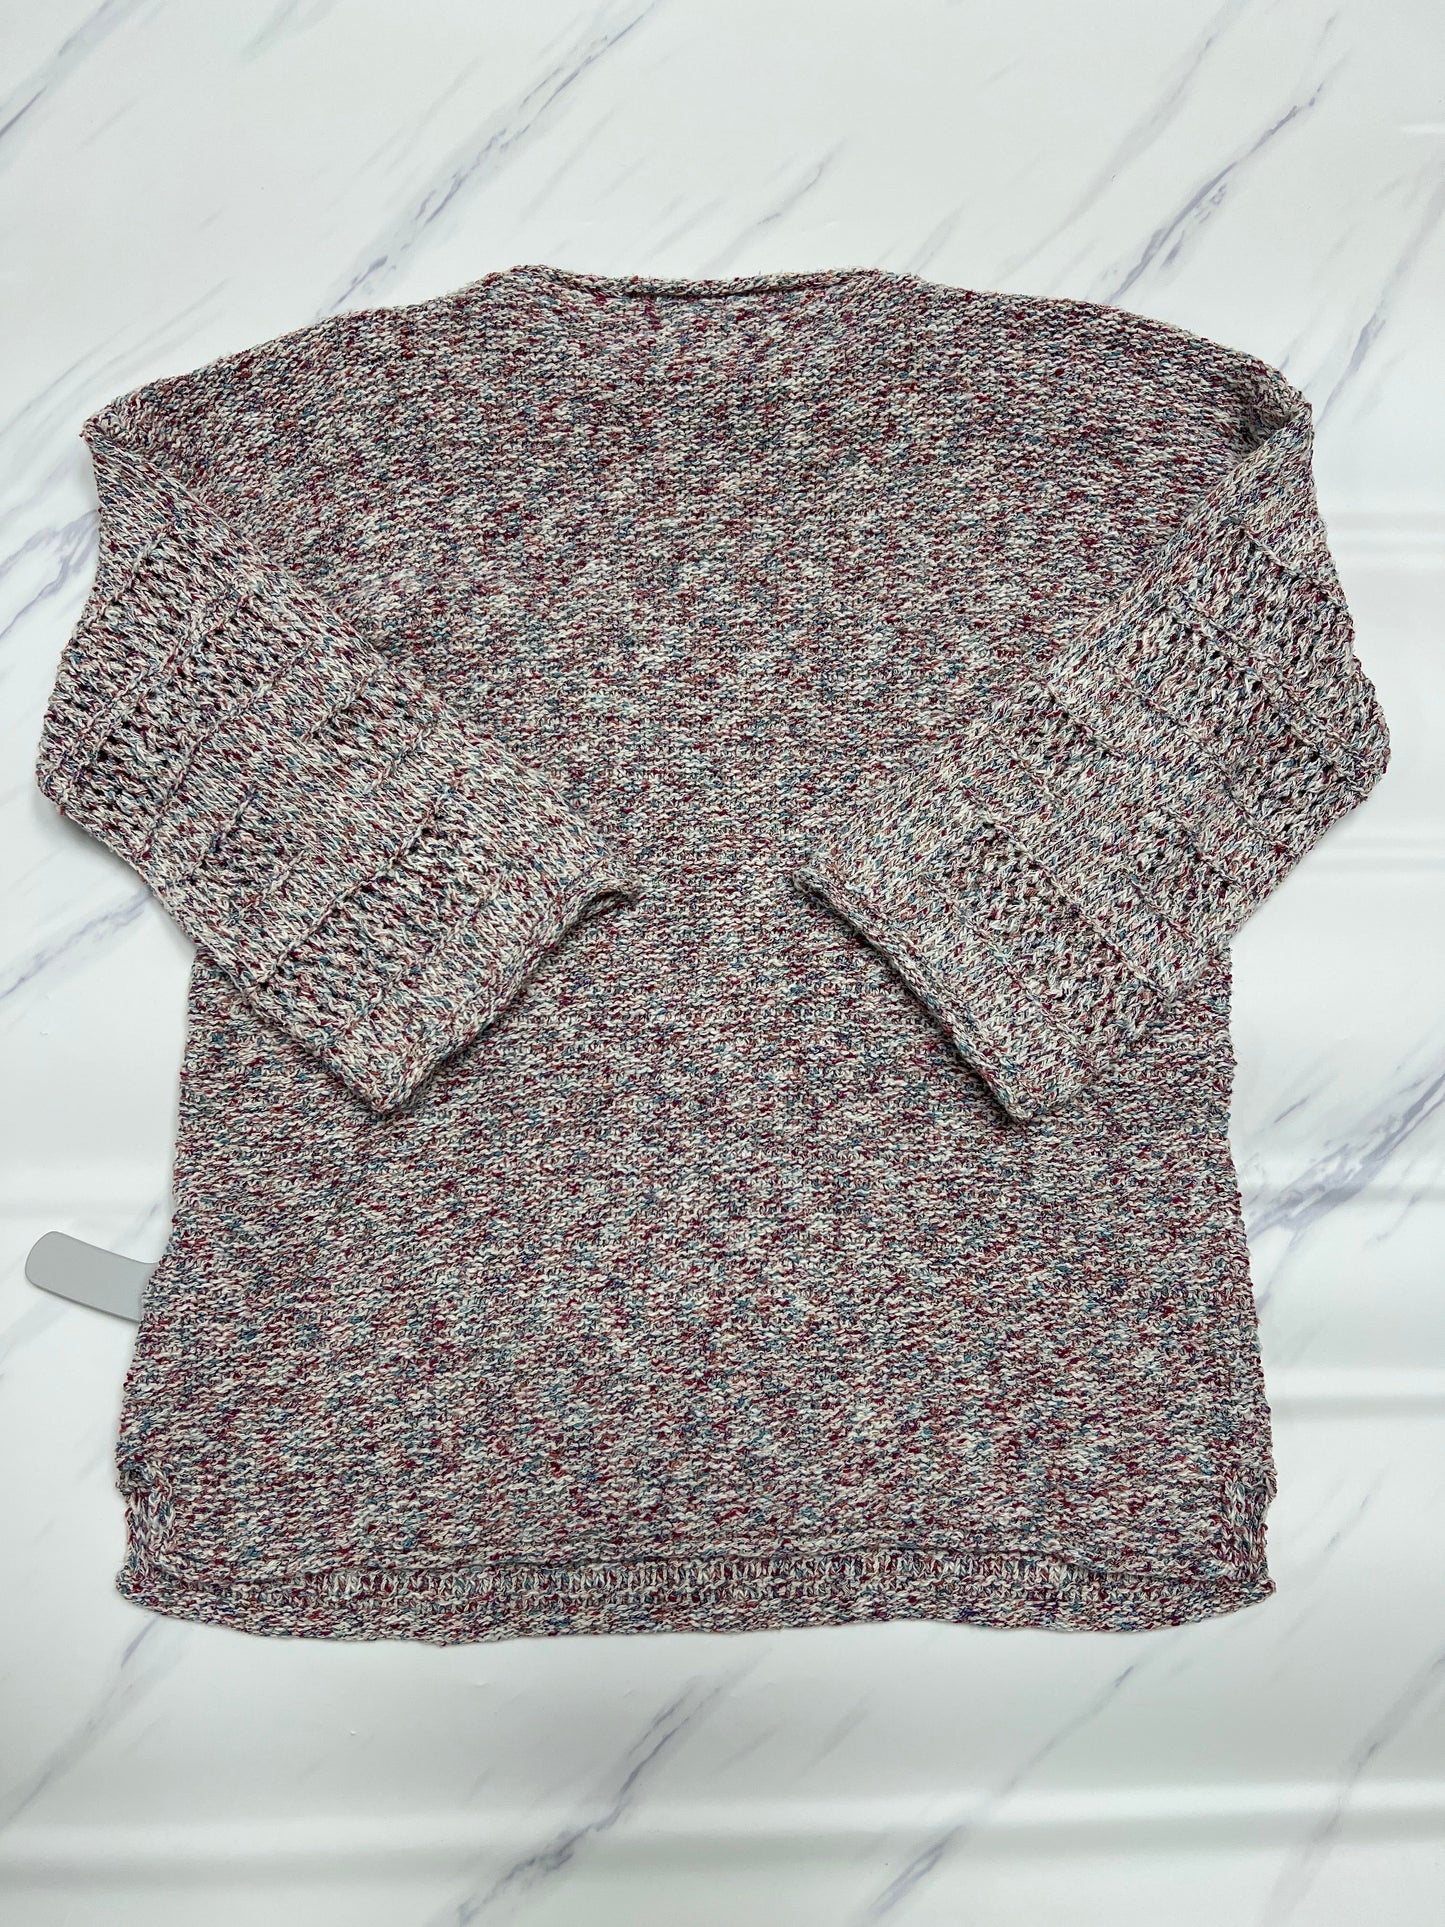 Sweater By Allison Joy  Size: S